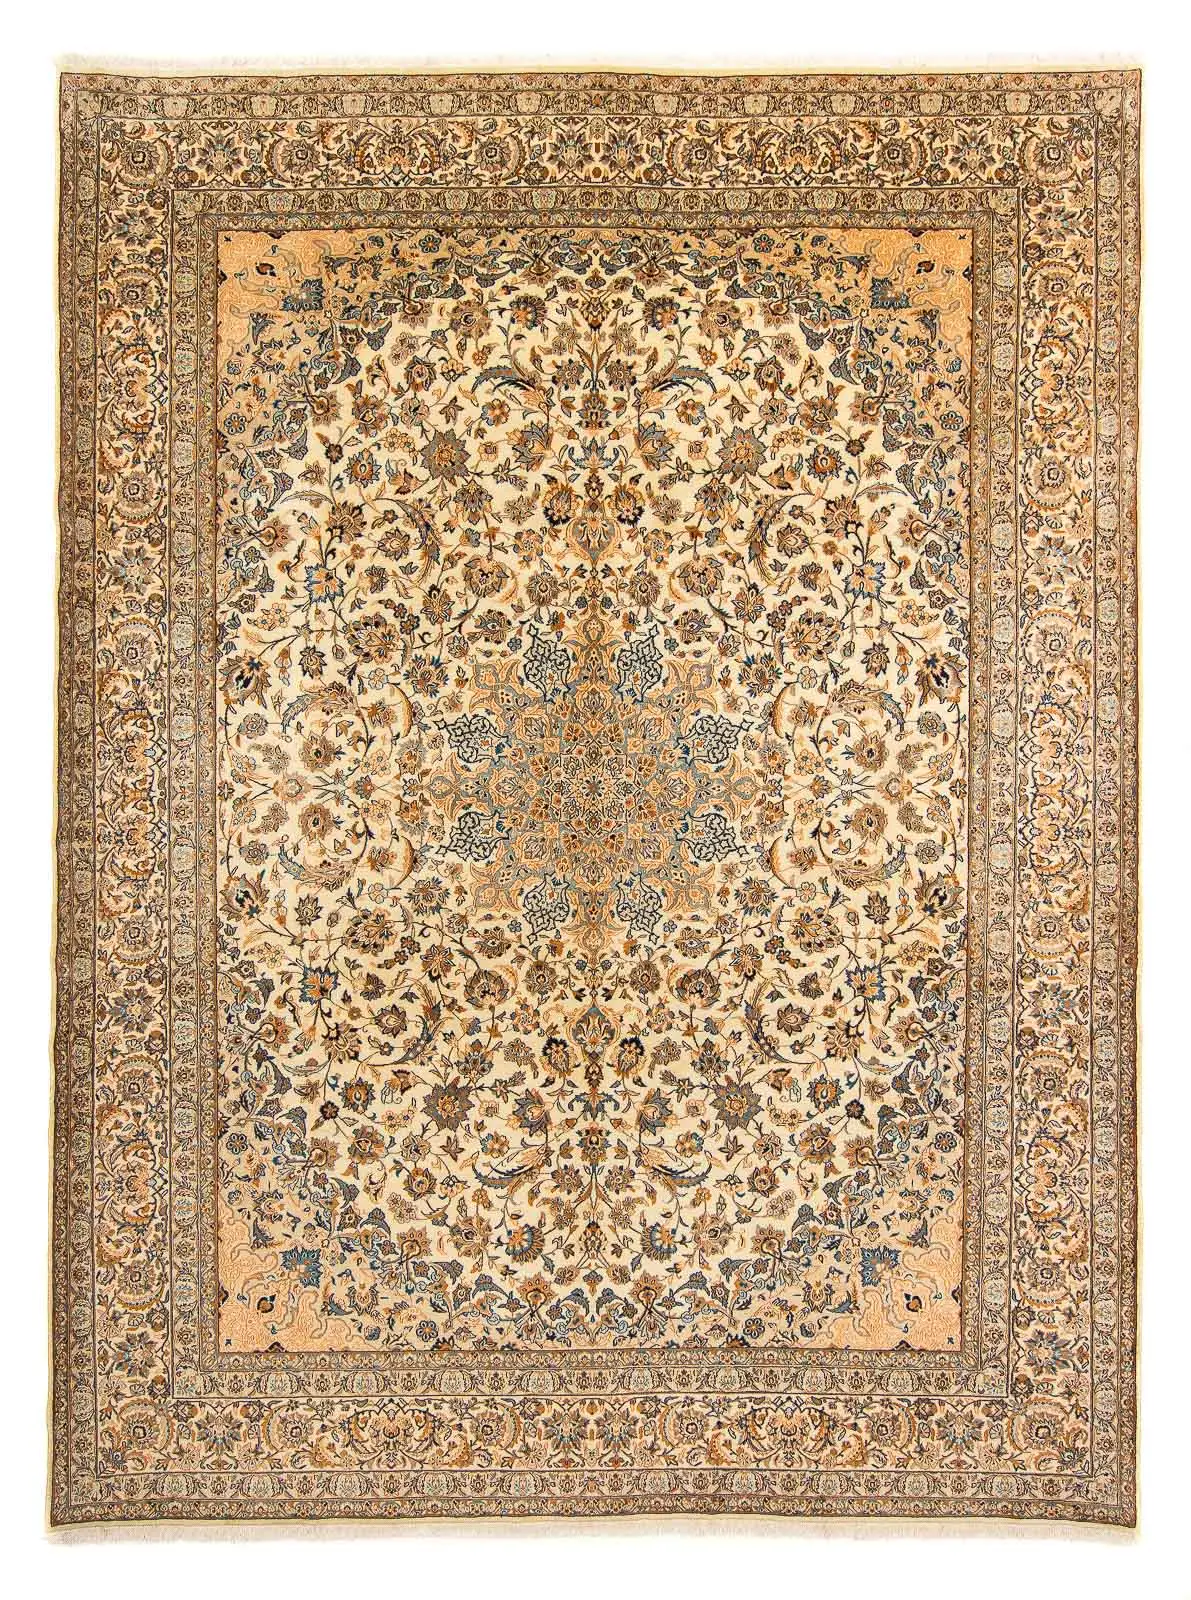 Vintage Teppich - 396 x 308 cm - beige